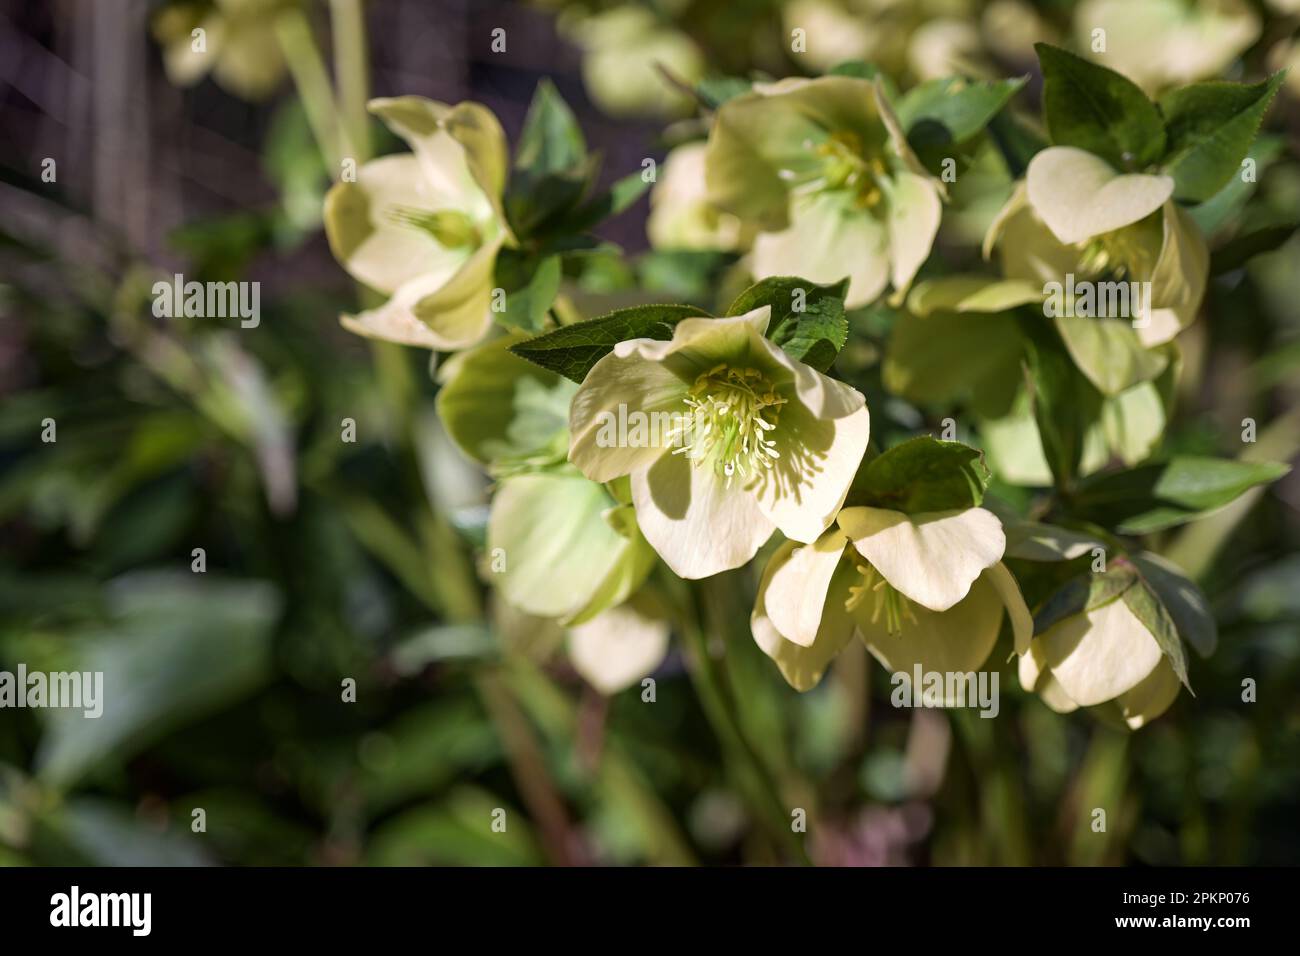 Rosa de Navidad (Helleborus niger) con flores de color amarillo claro y hojas de color verde oscuro en un jardín o parque, planta perenne de hoja perenne, espacio de copia, seleccionado Foto de stock